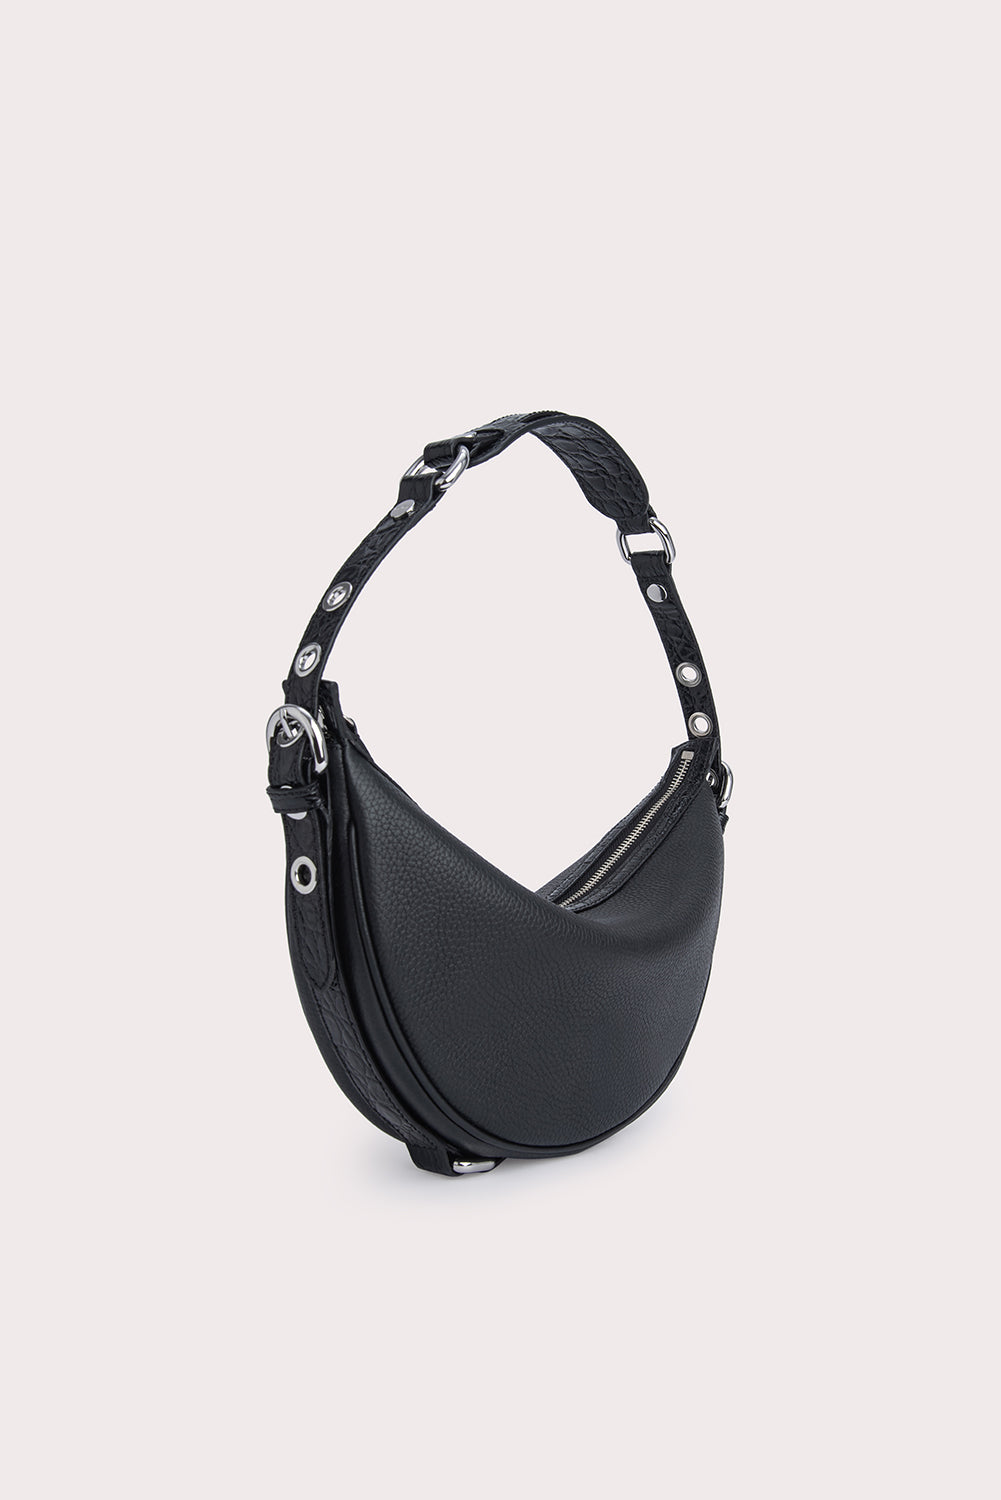 Rachel black stud leather bag, Designer Collection